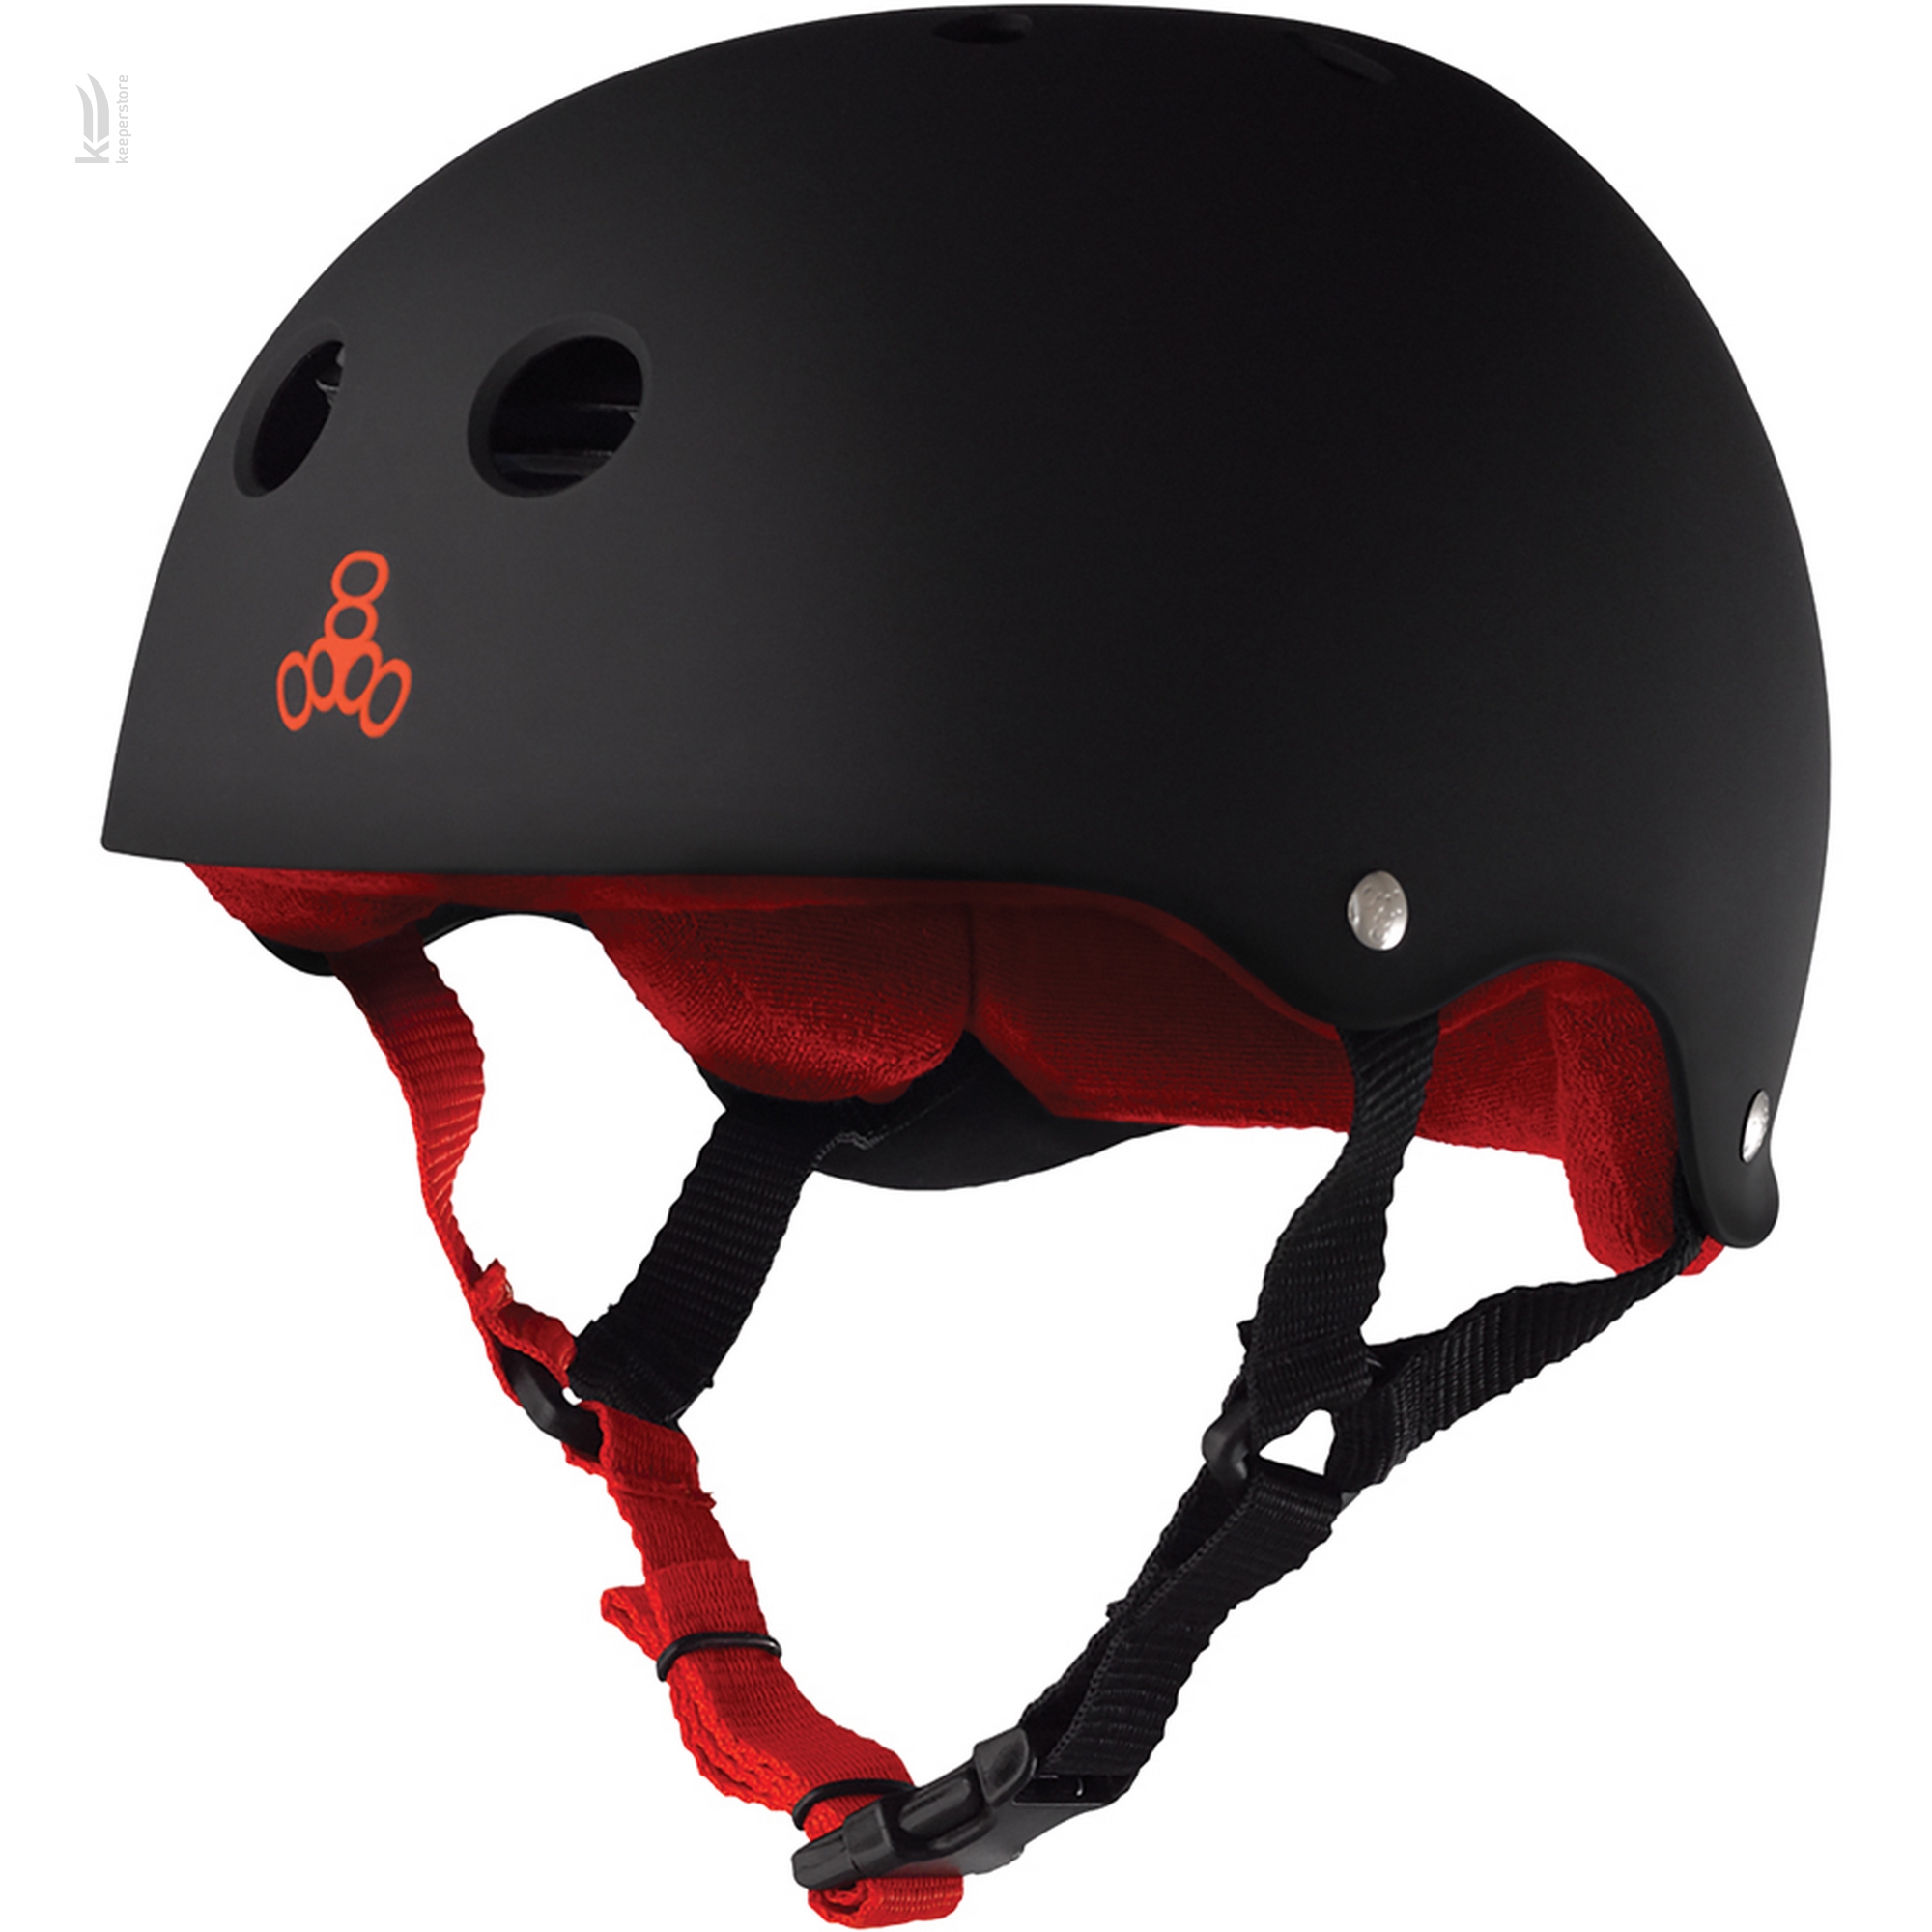 Шлем для роликов Triple8 Sweatsaver Helmet Black w/ Red (L)